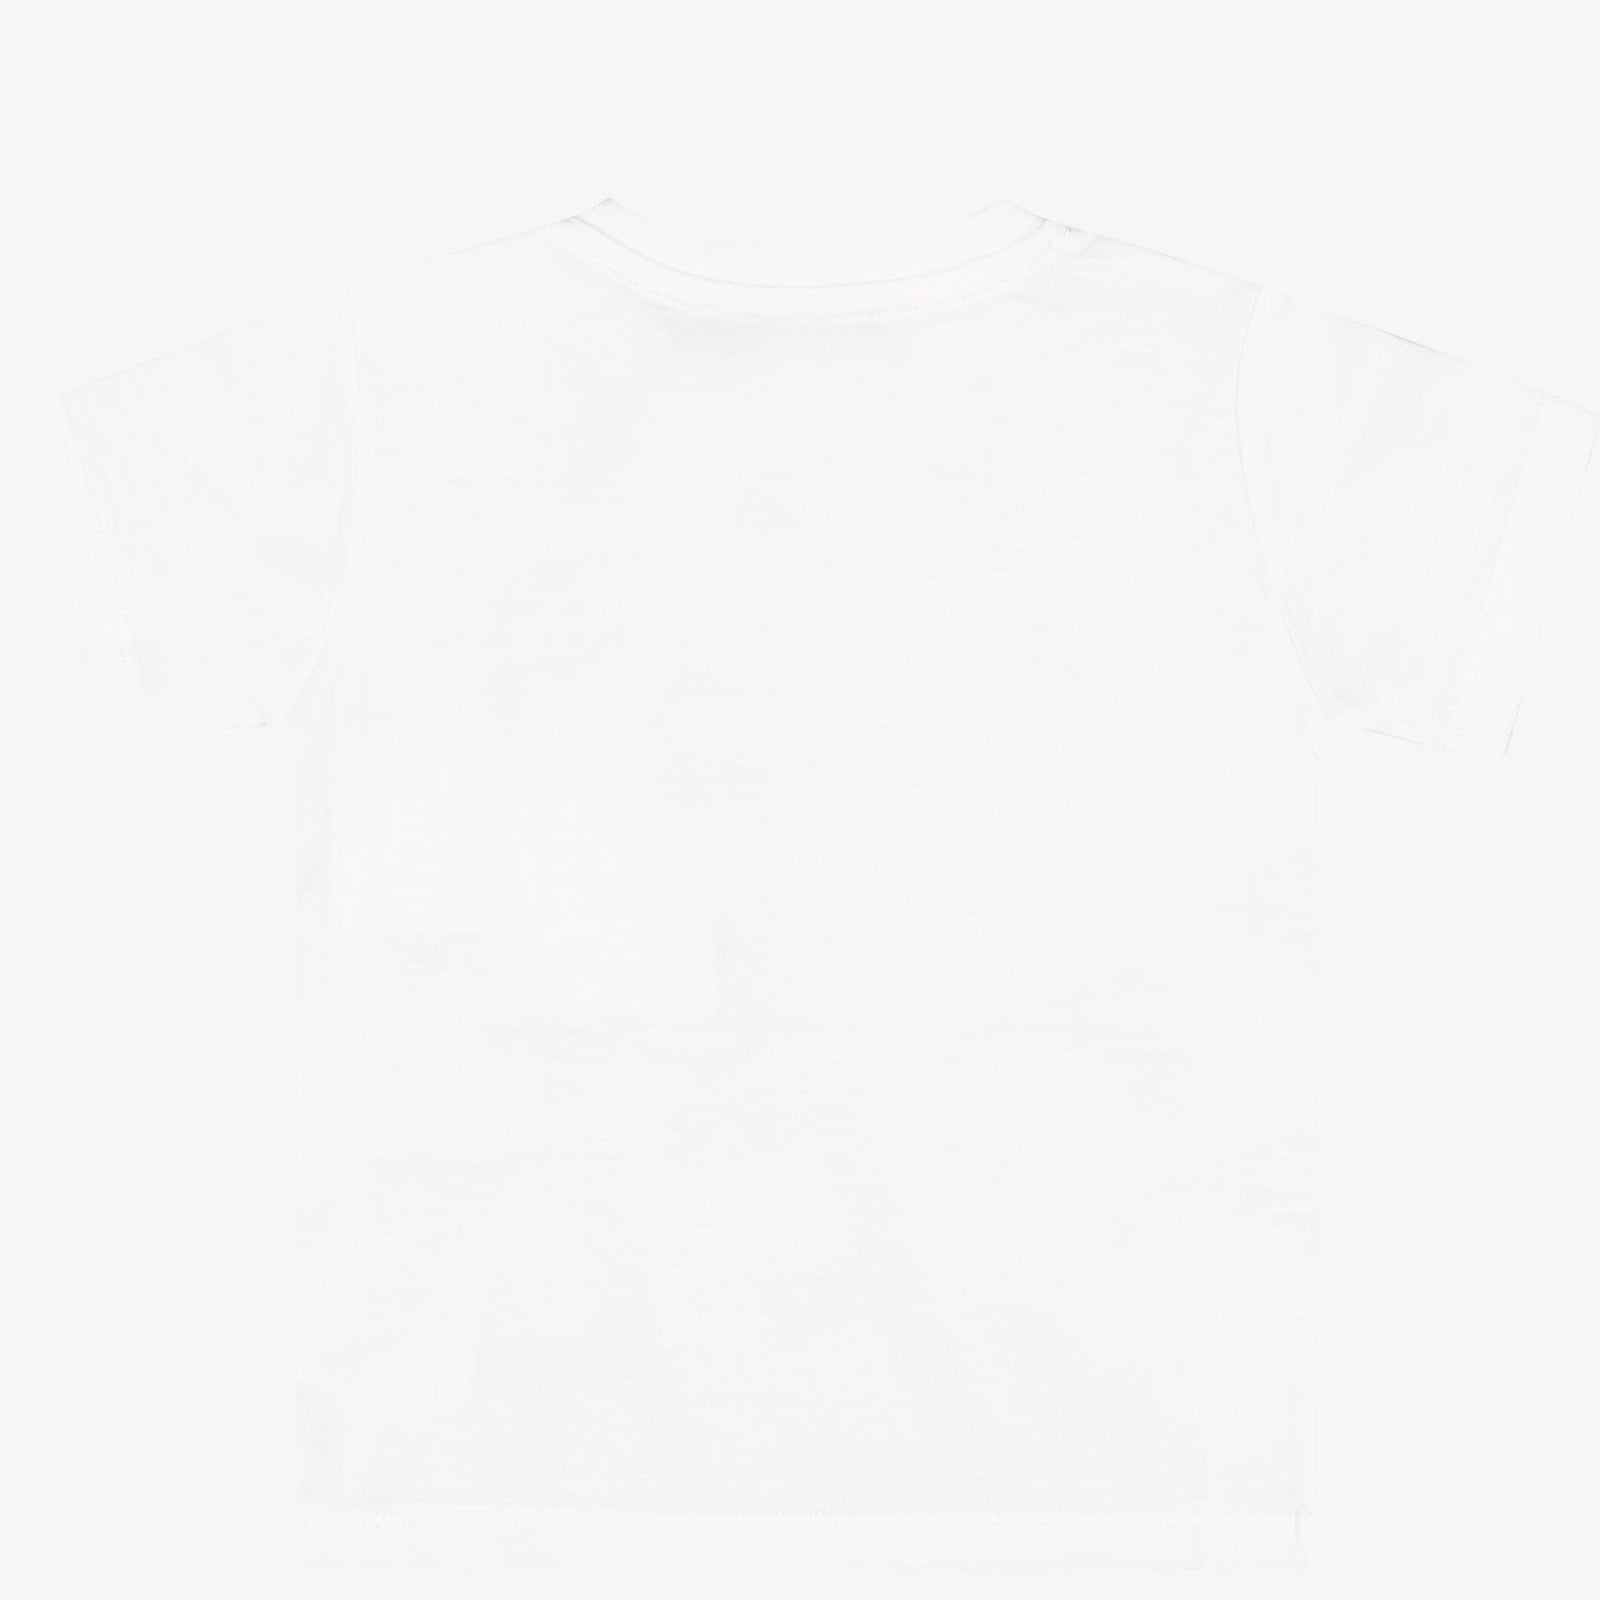 Iceberg Baby Jongens T-shirt Wit 6 mnd